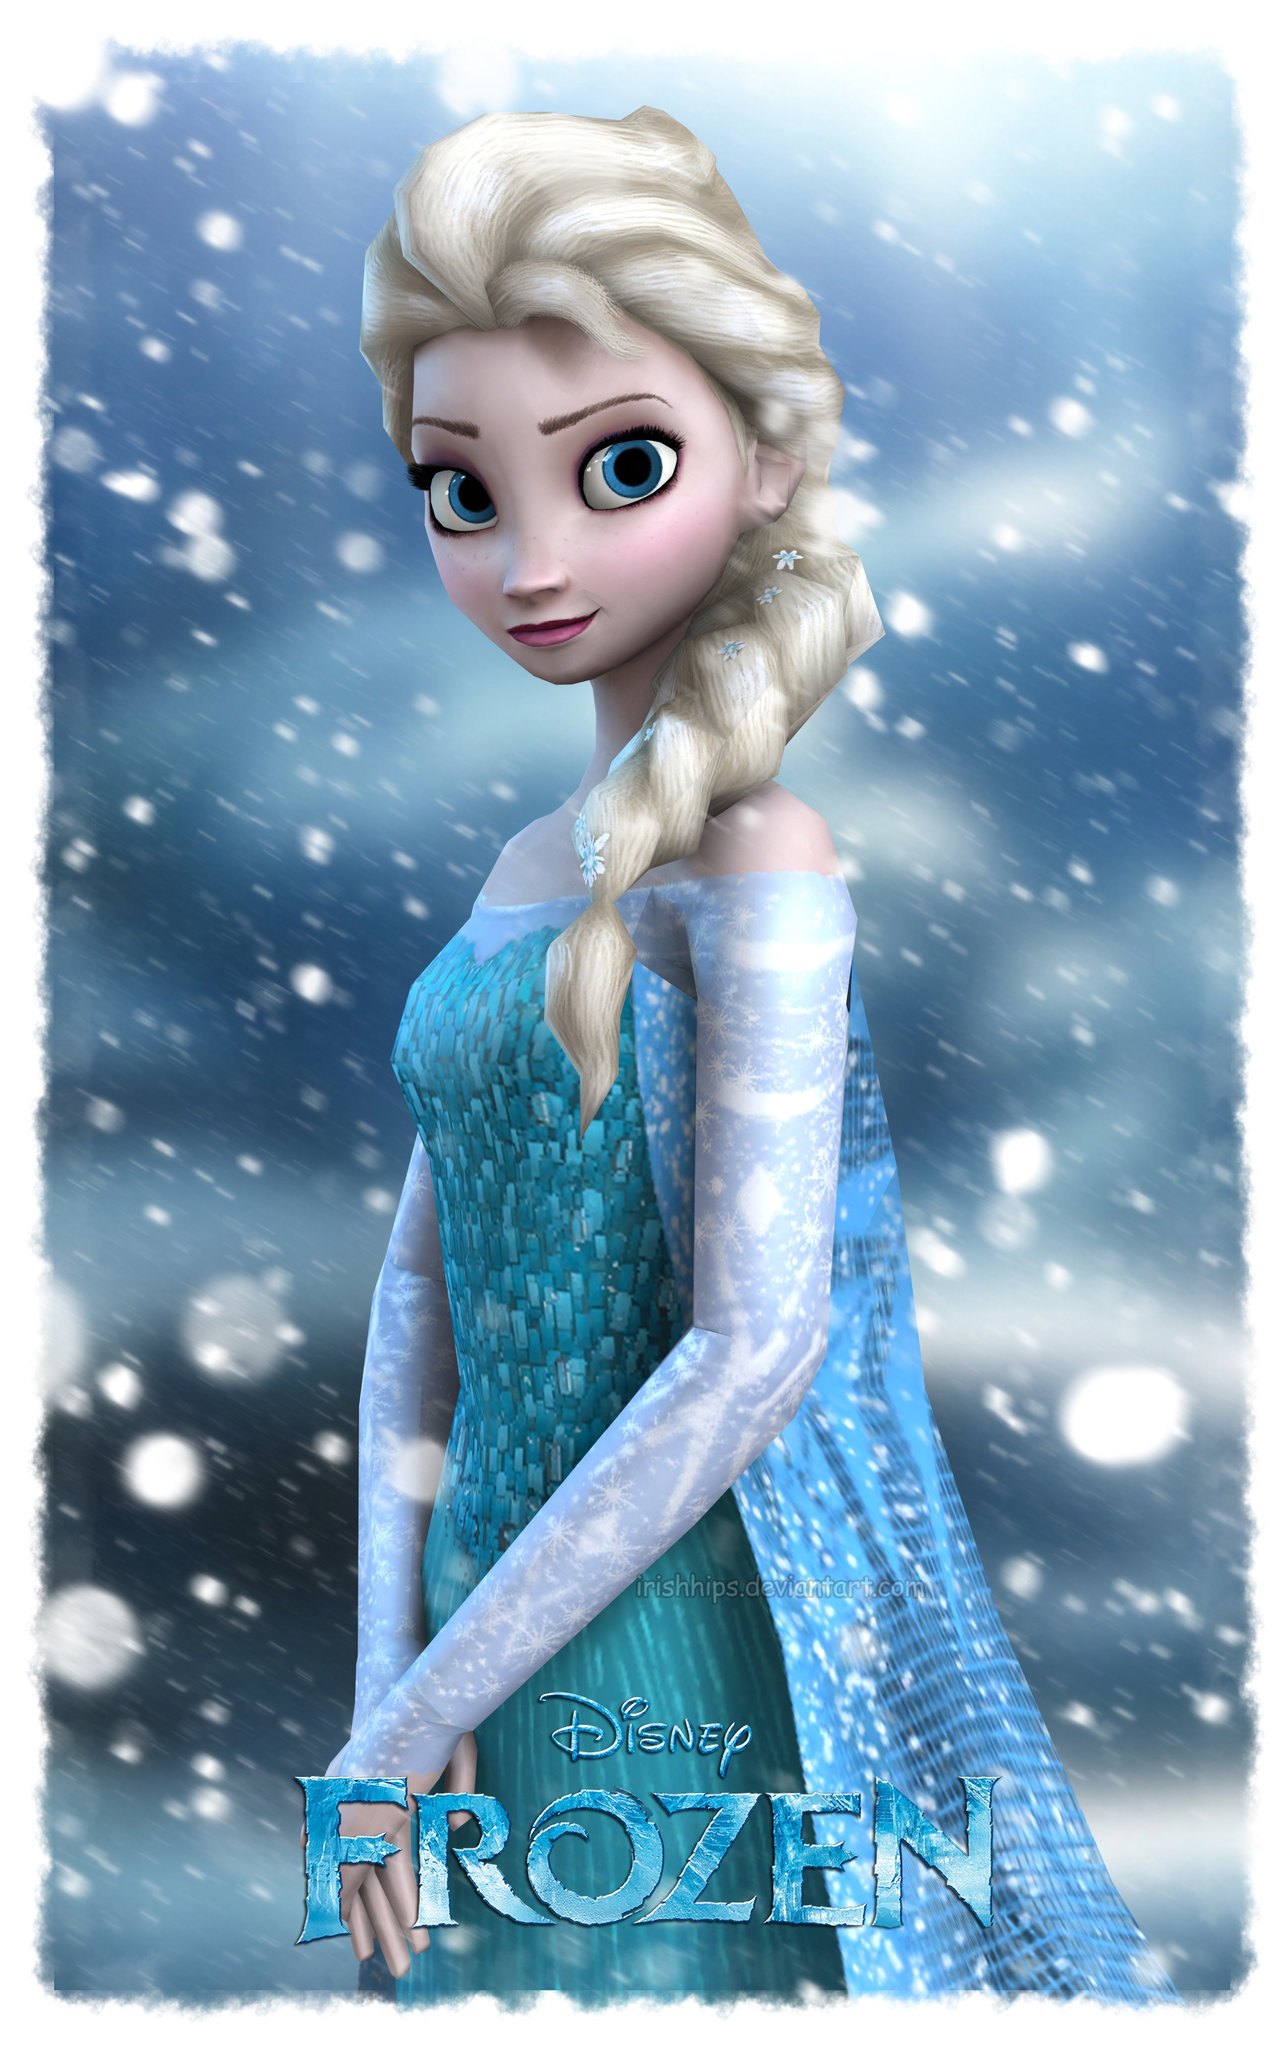 Disney's Frozen: Elsa The Snow Queen by Irishhips | Frozen ...